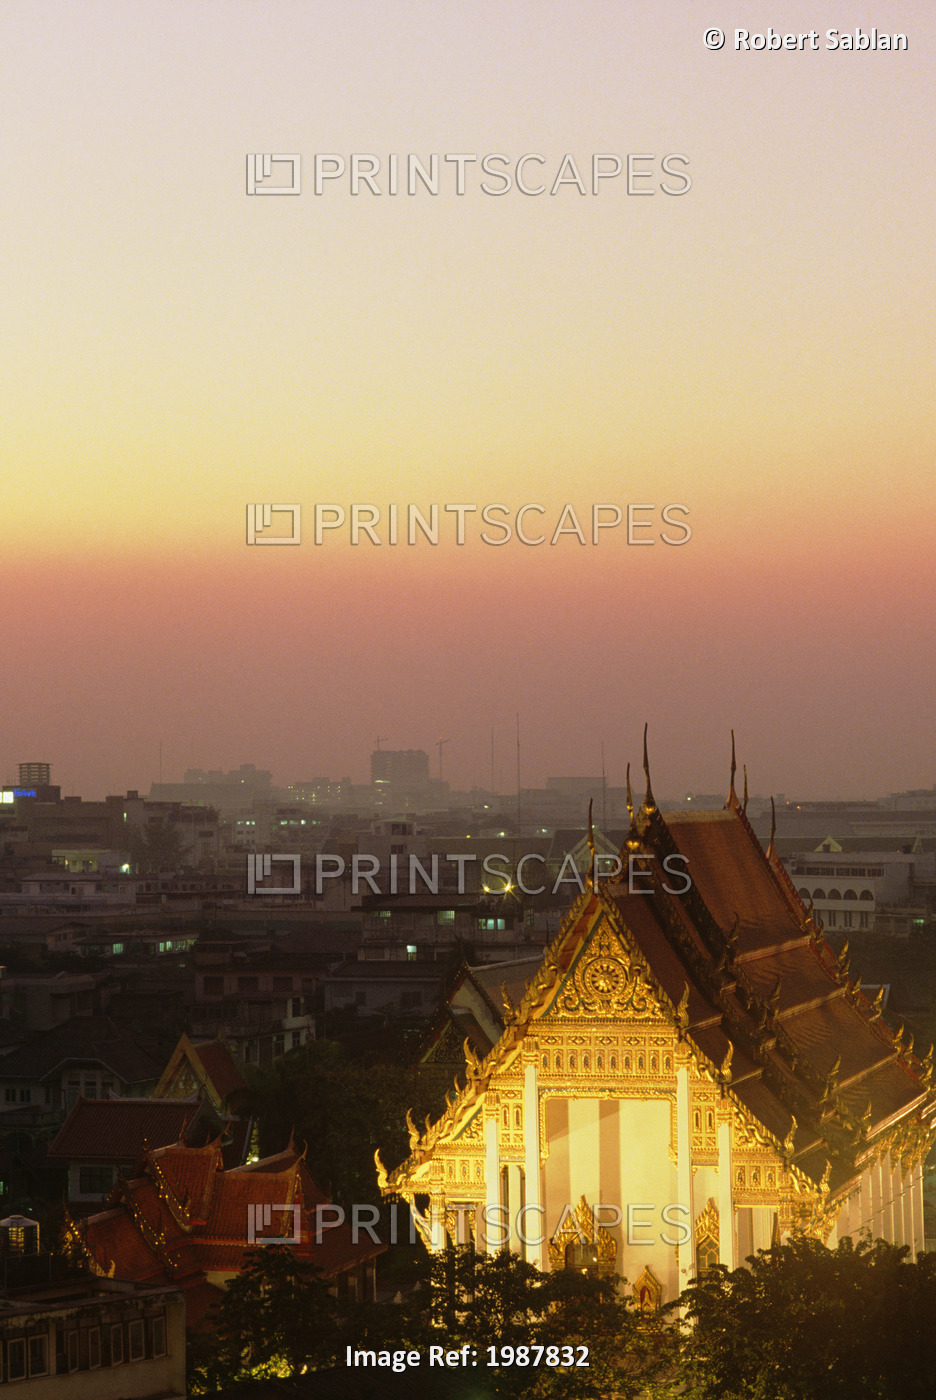 Thailand, Wat Saket Temple at sunset with evening lights; Bangkok